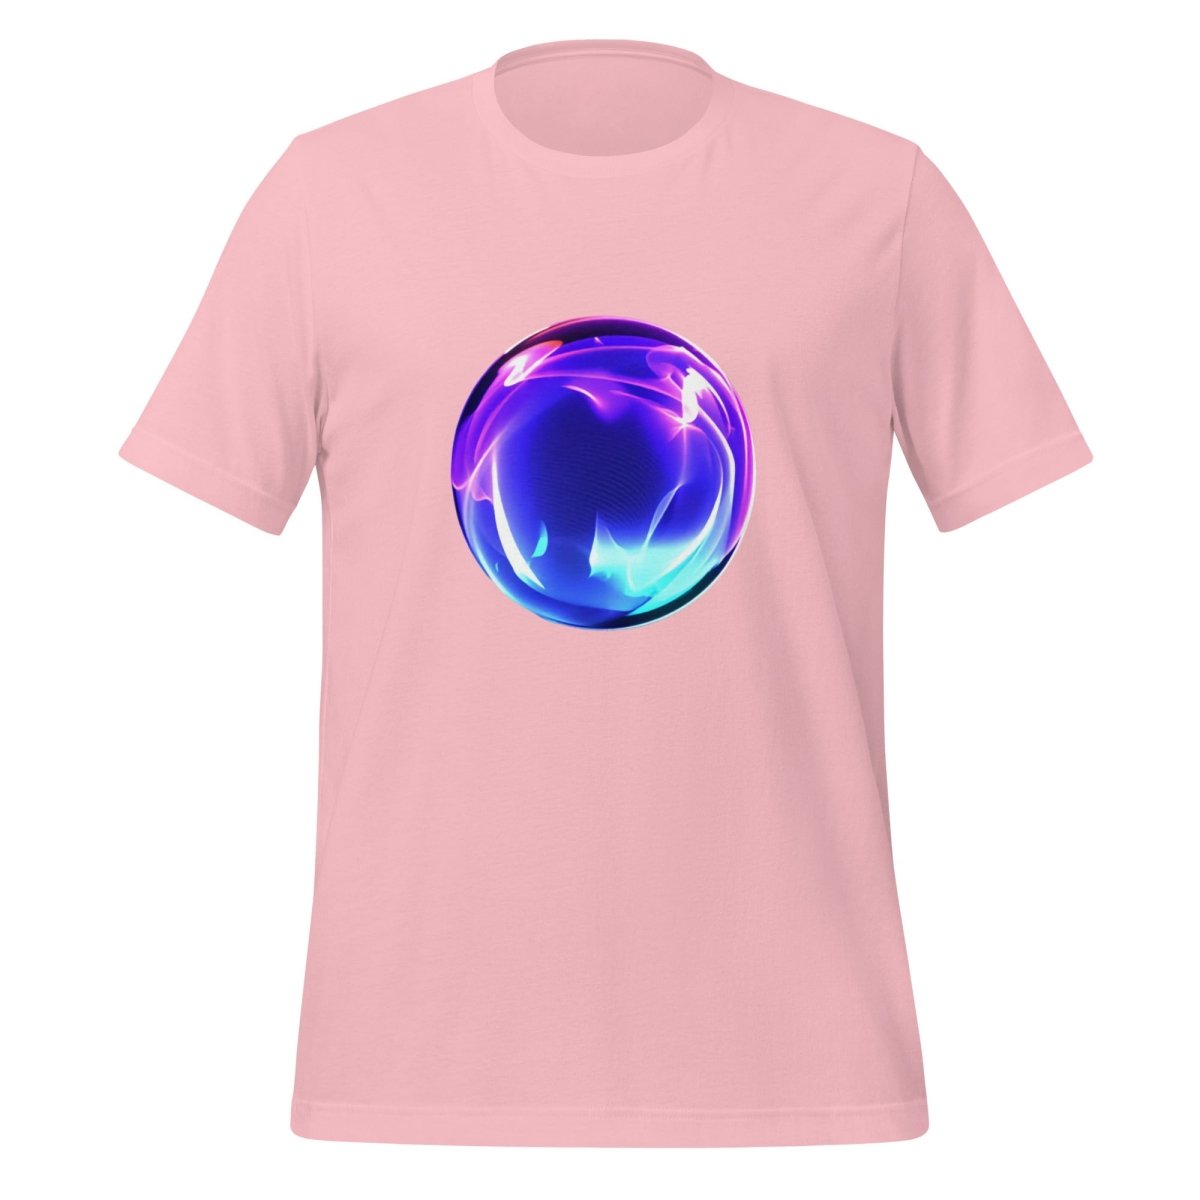 AI Assistant Artwork T - Shirt (unisex) - Pink - AI Store